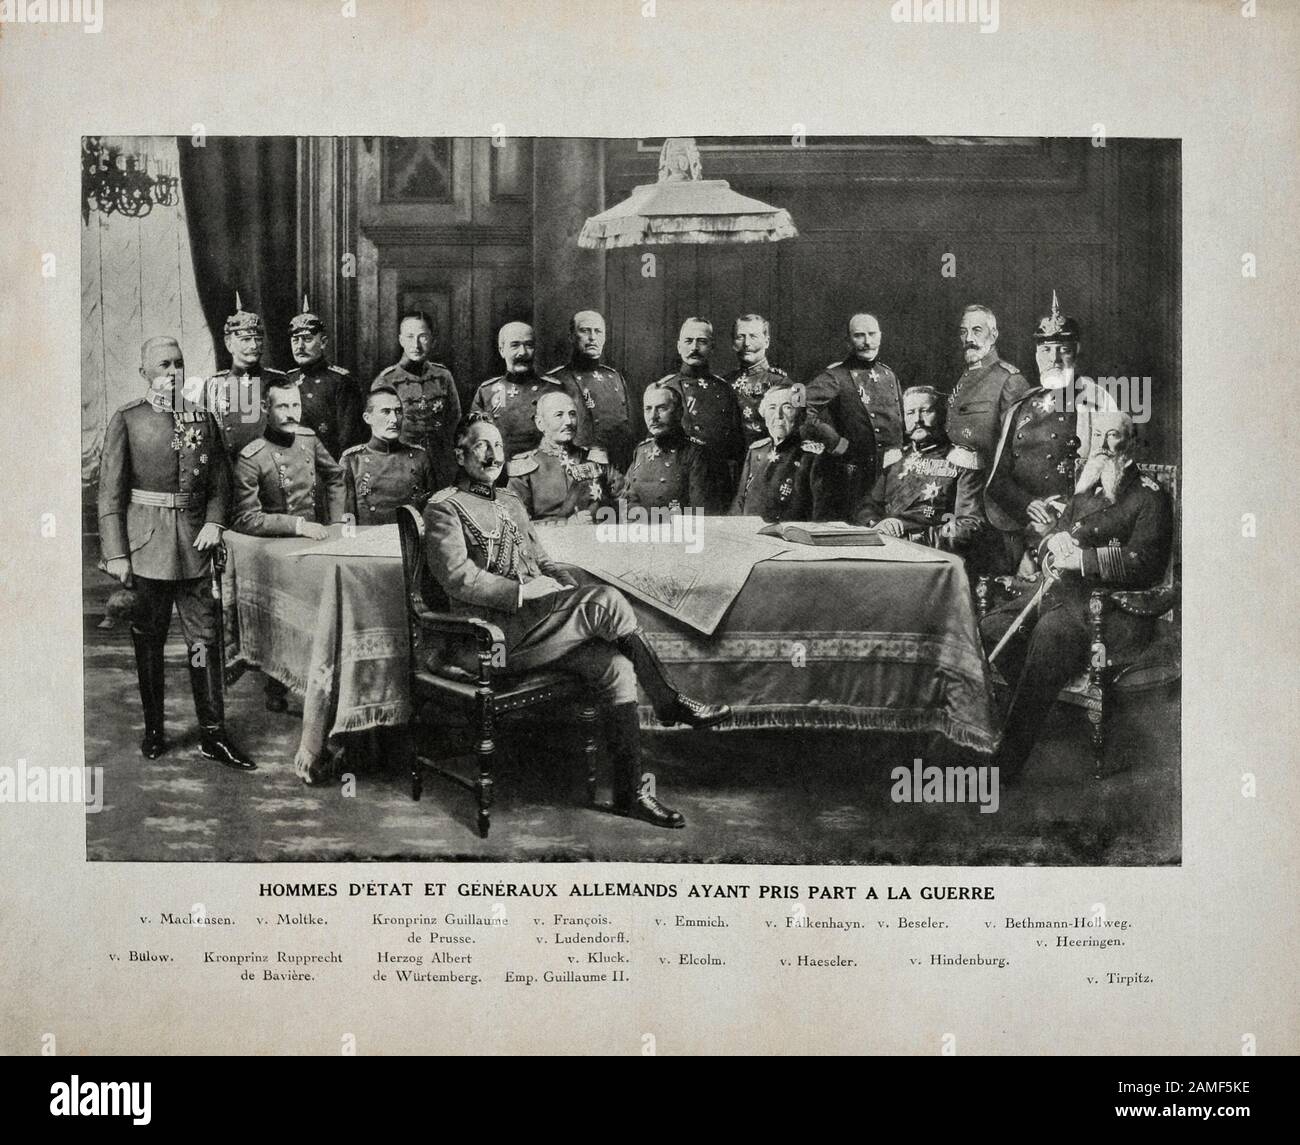 Uomini di stato e generali tedeschi che hanno preso parte alla prima guerra mondiale. Da sinistra a destra: Von Bulow, von Machensen, von Moltke, Kronprinz Rupprecht di Baviera, Foto Stock